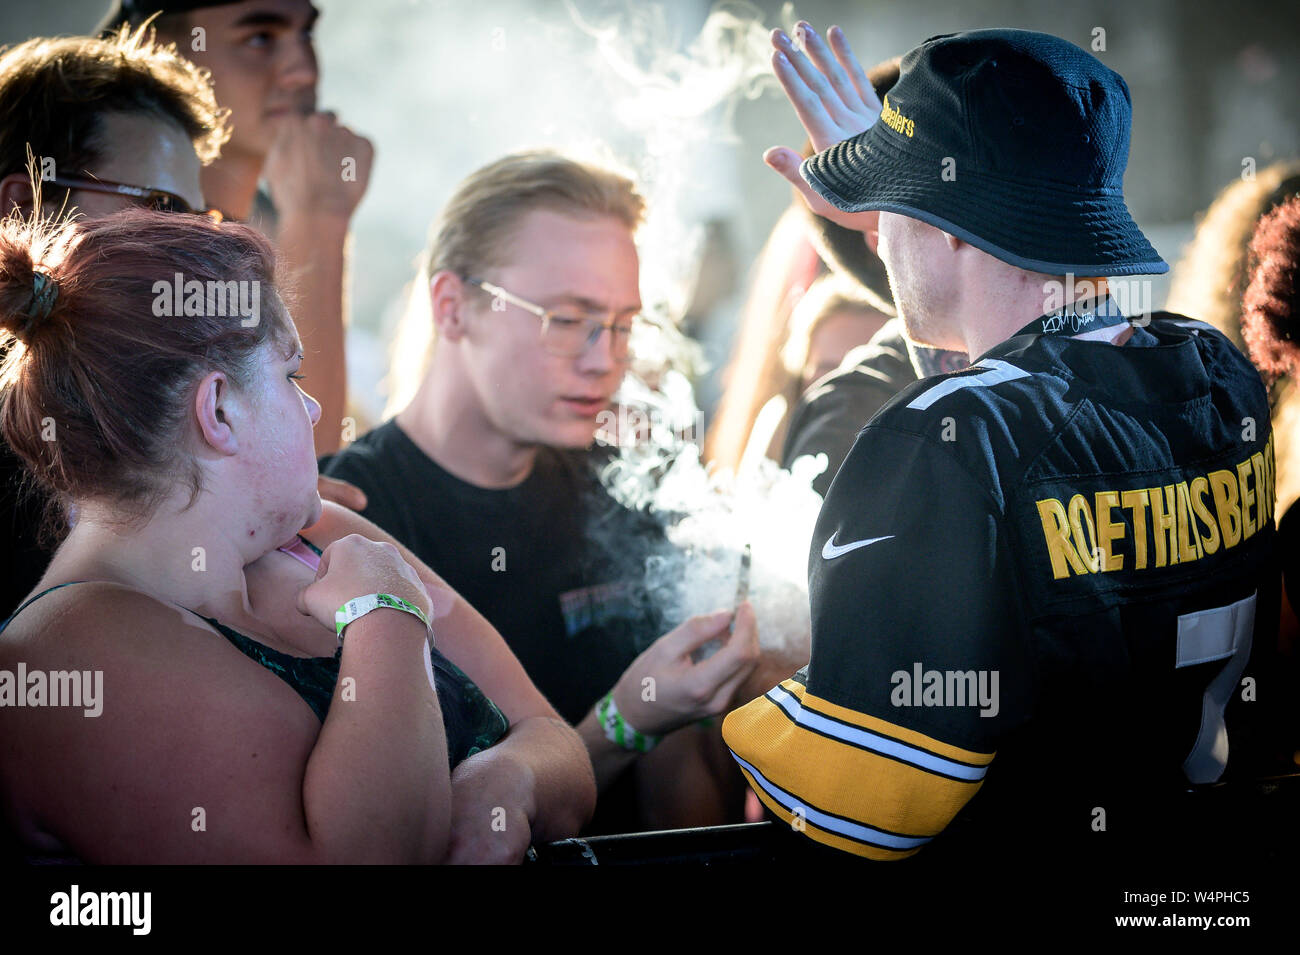 Juli 23, 2019, Toronto, Ontario, Kanada: junge Kanadier erlaubterweise Rauchen von Cannabis bei einem Konzert, Budweiser Stadium in Toronto Quelle: Igor Vidyashev/ZUMA Draht/Alamy leben Nachrichten Stockfoto